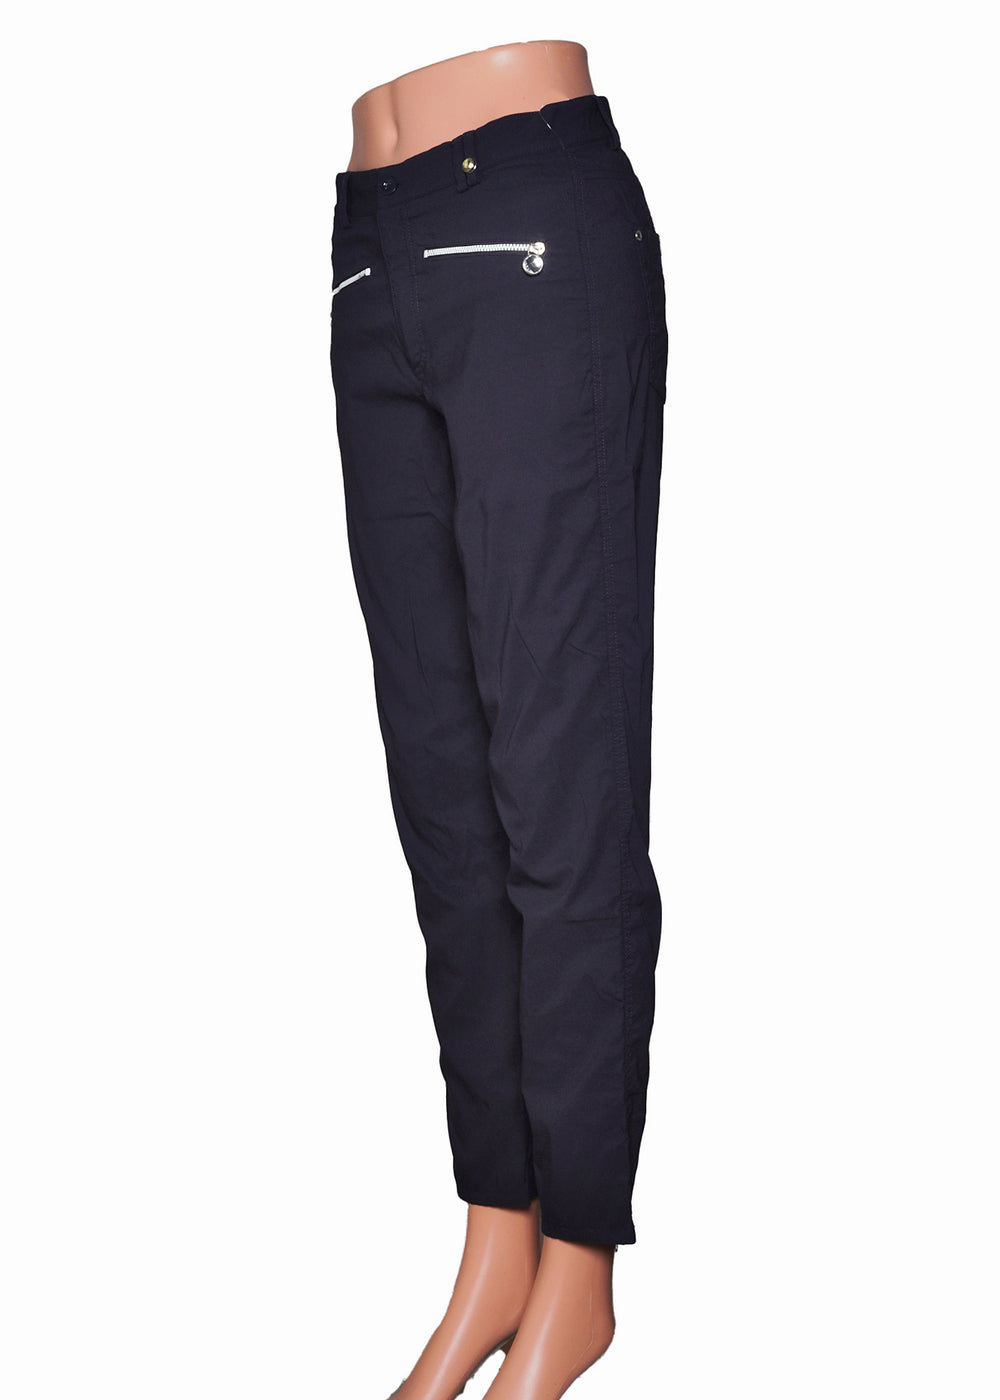 Golfino Pants - Navy -  Size 6 - Skorzie